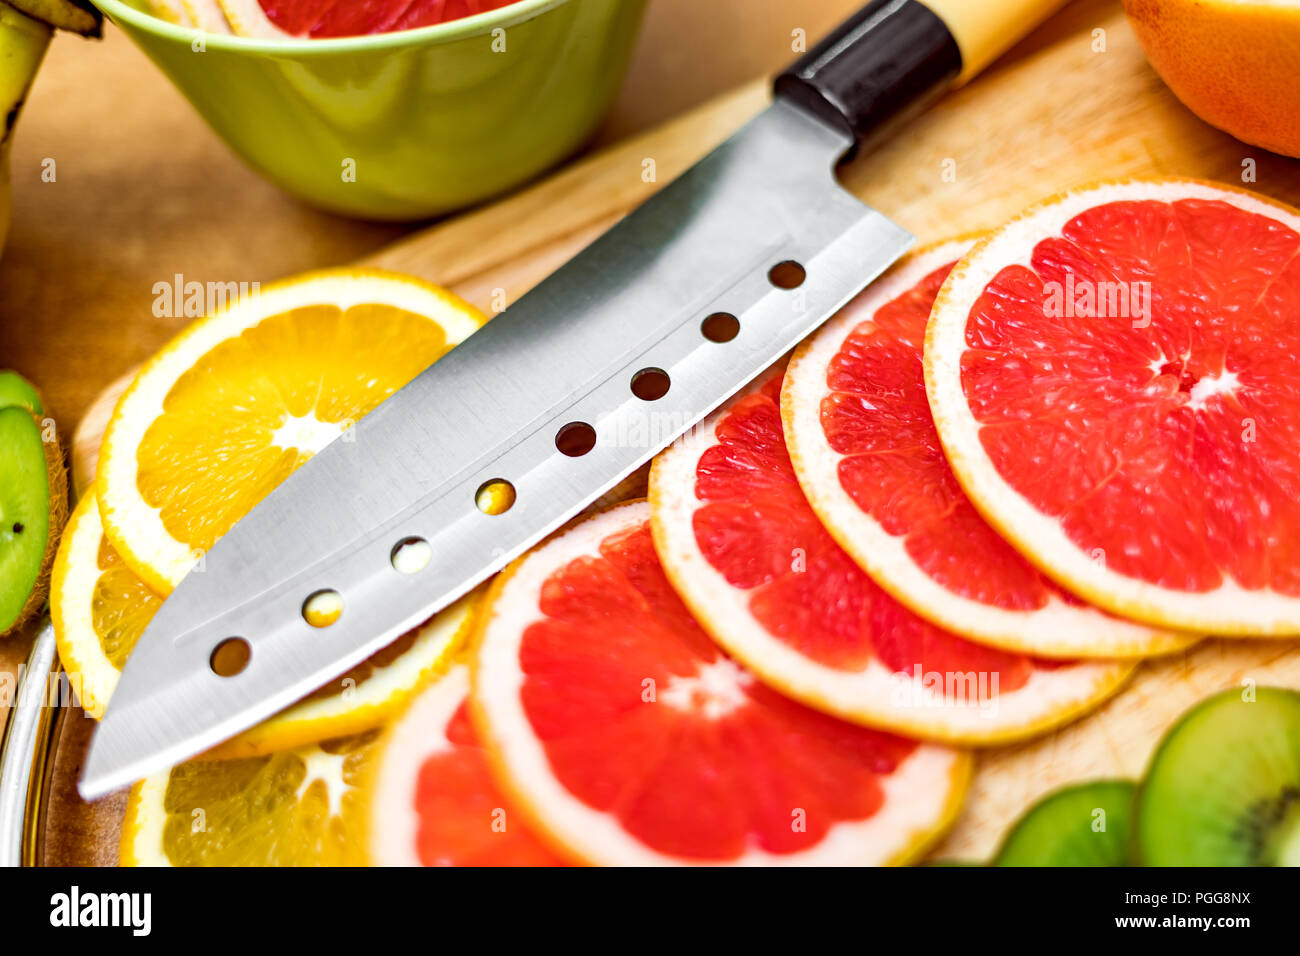 Coltello da cucina affilato sul tagliere accanto a fette di pompelmo e altri frutti Foto Stock